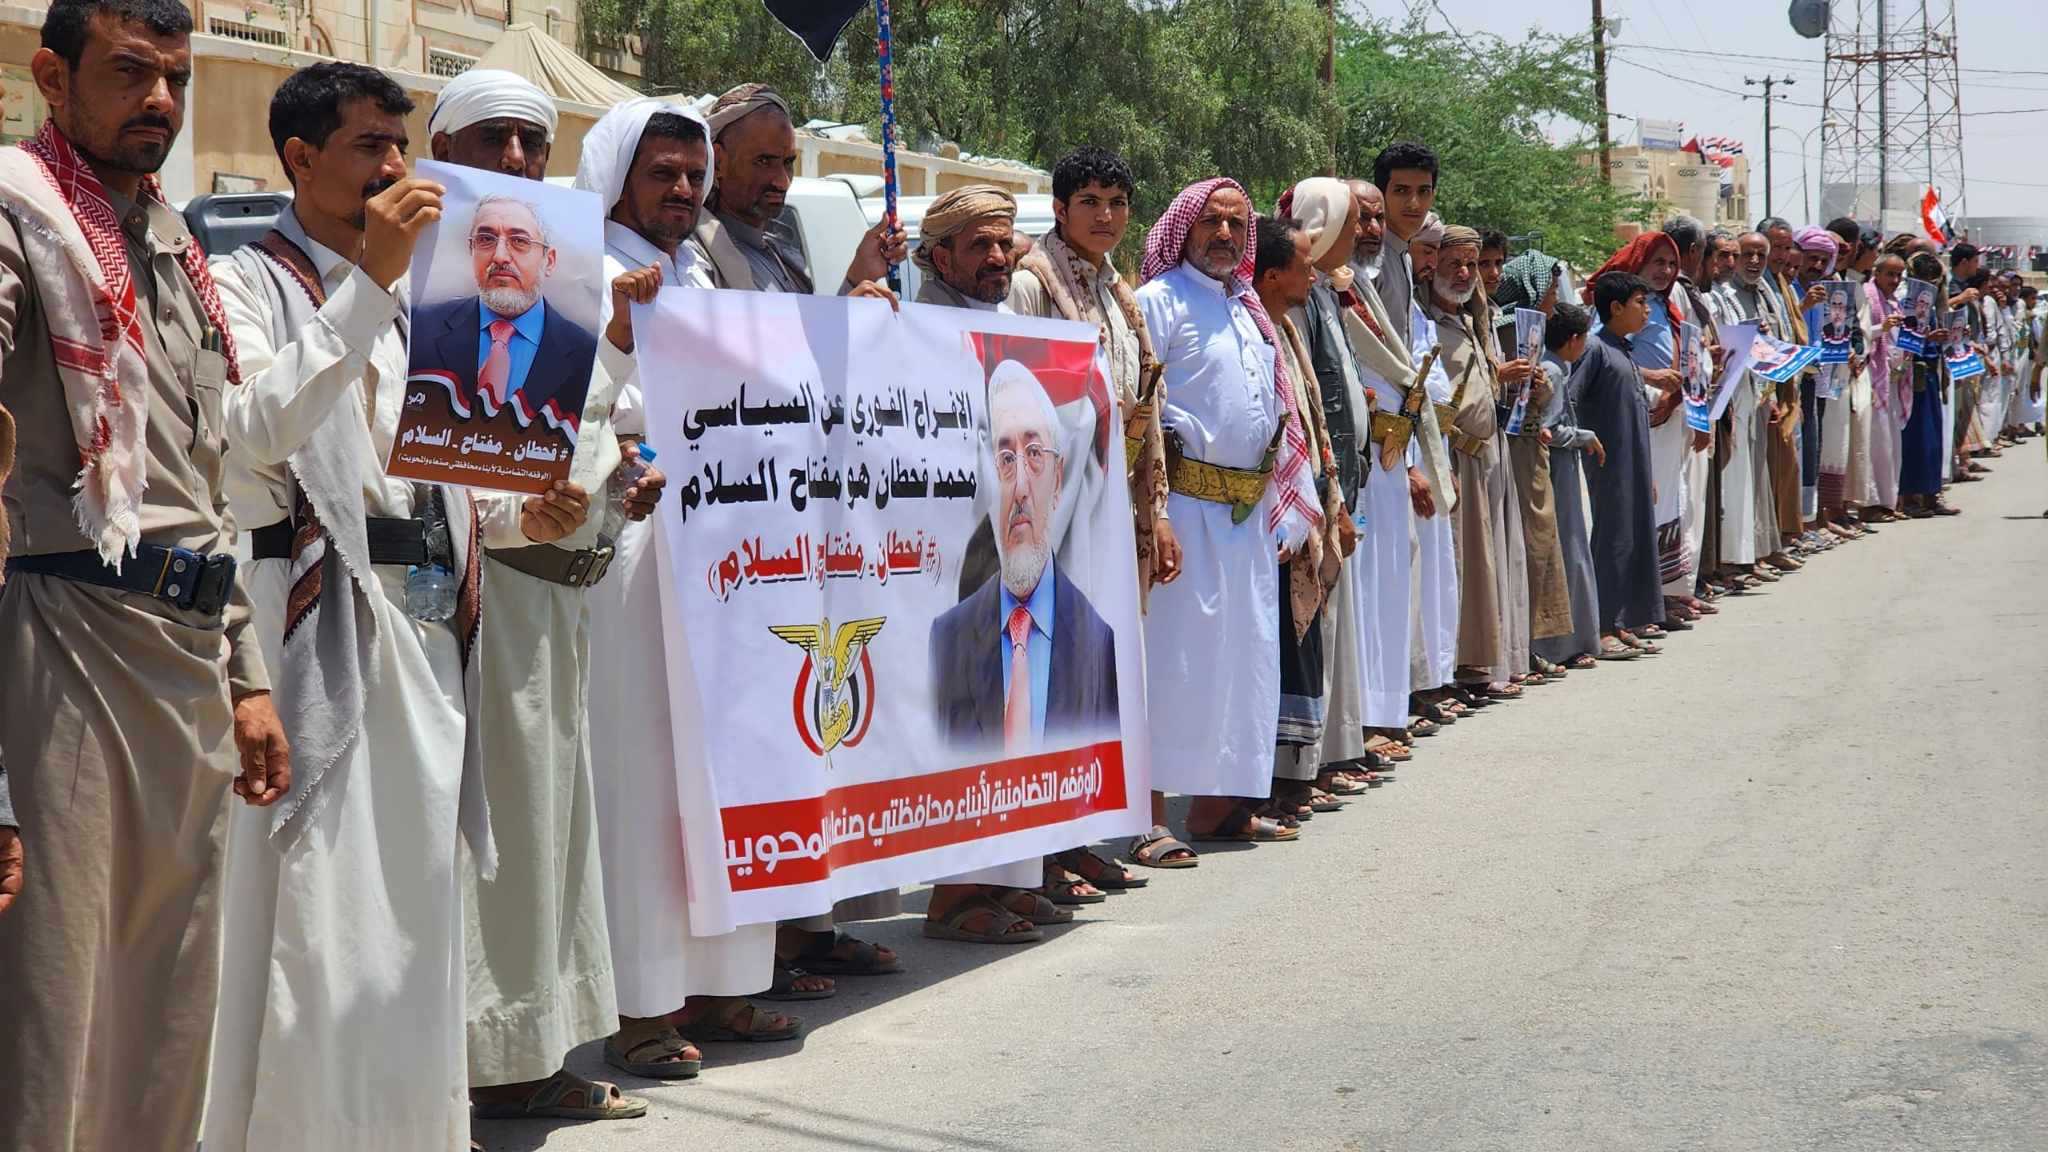  وقفة احتجاجية لأبناء صنعاء والمحويت طالبت بالإفراج عن السياسي محمد قحطان وكافة المختطفين